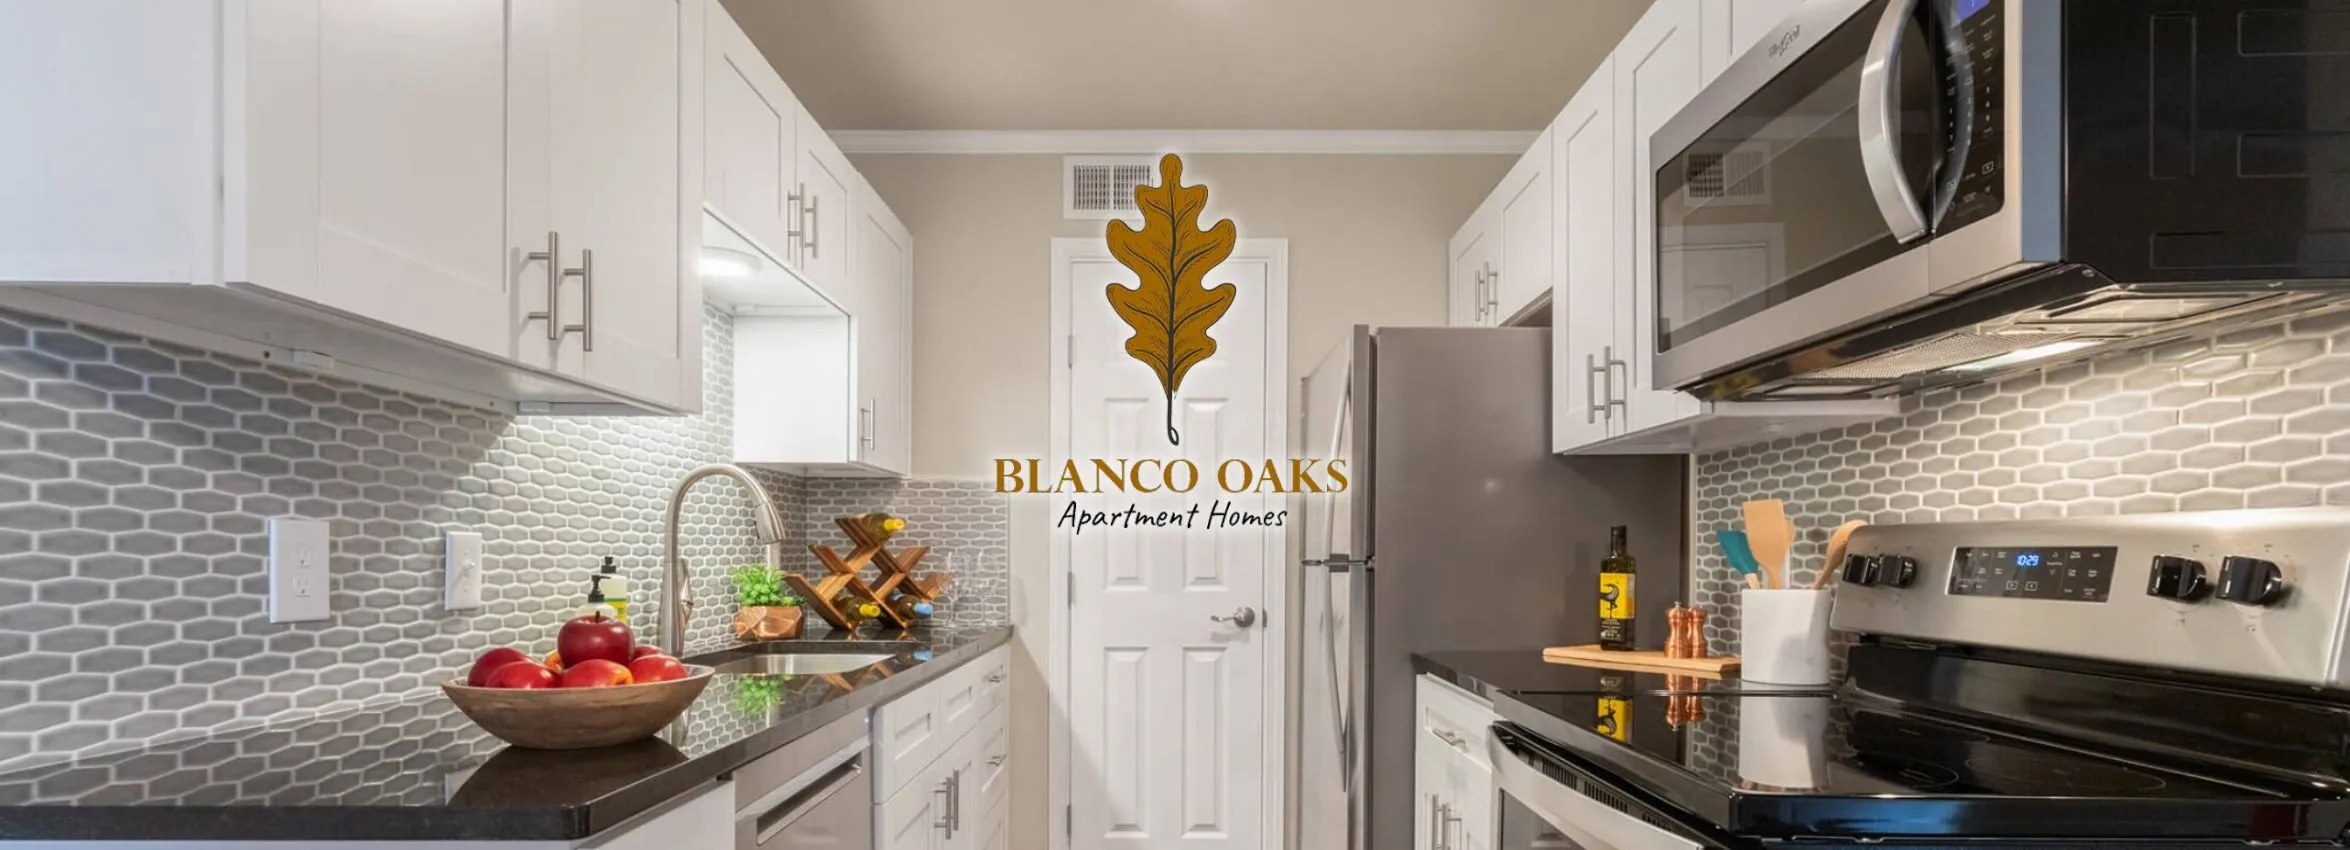 Blanco-Oaks-Apartments_Desktop_ET